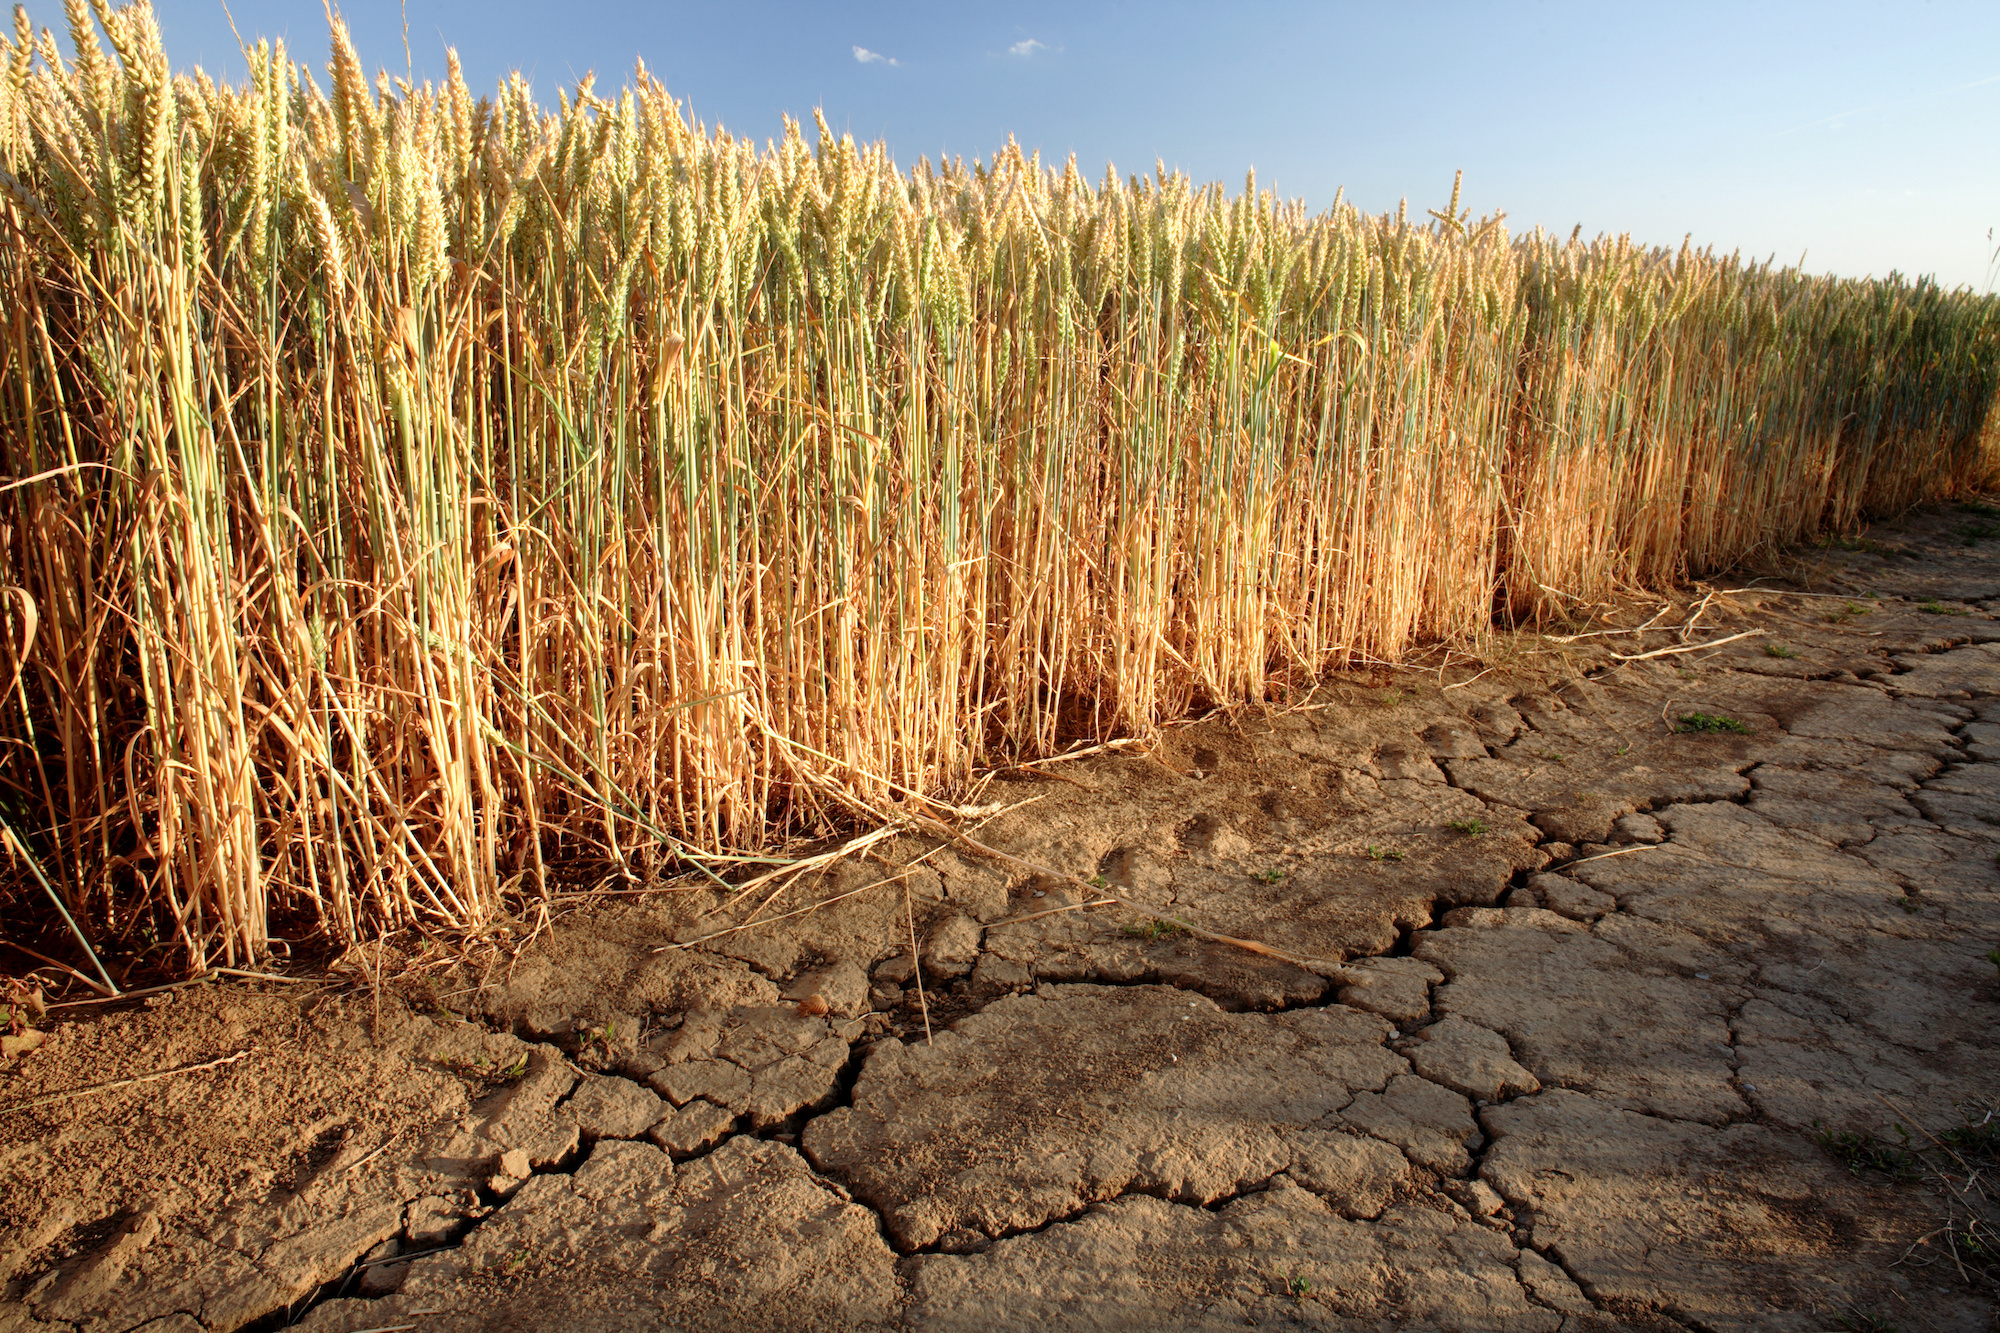 Eine erhöhte Stresstoleranz gegenüber Dürreperioden wird angesichts des Klimawandels wichtiger. (Bild: Adobe Stock)